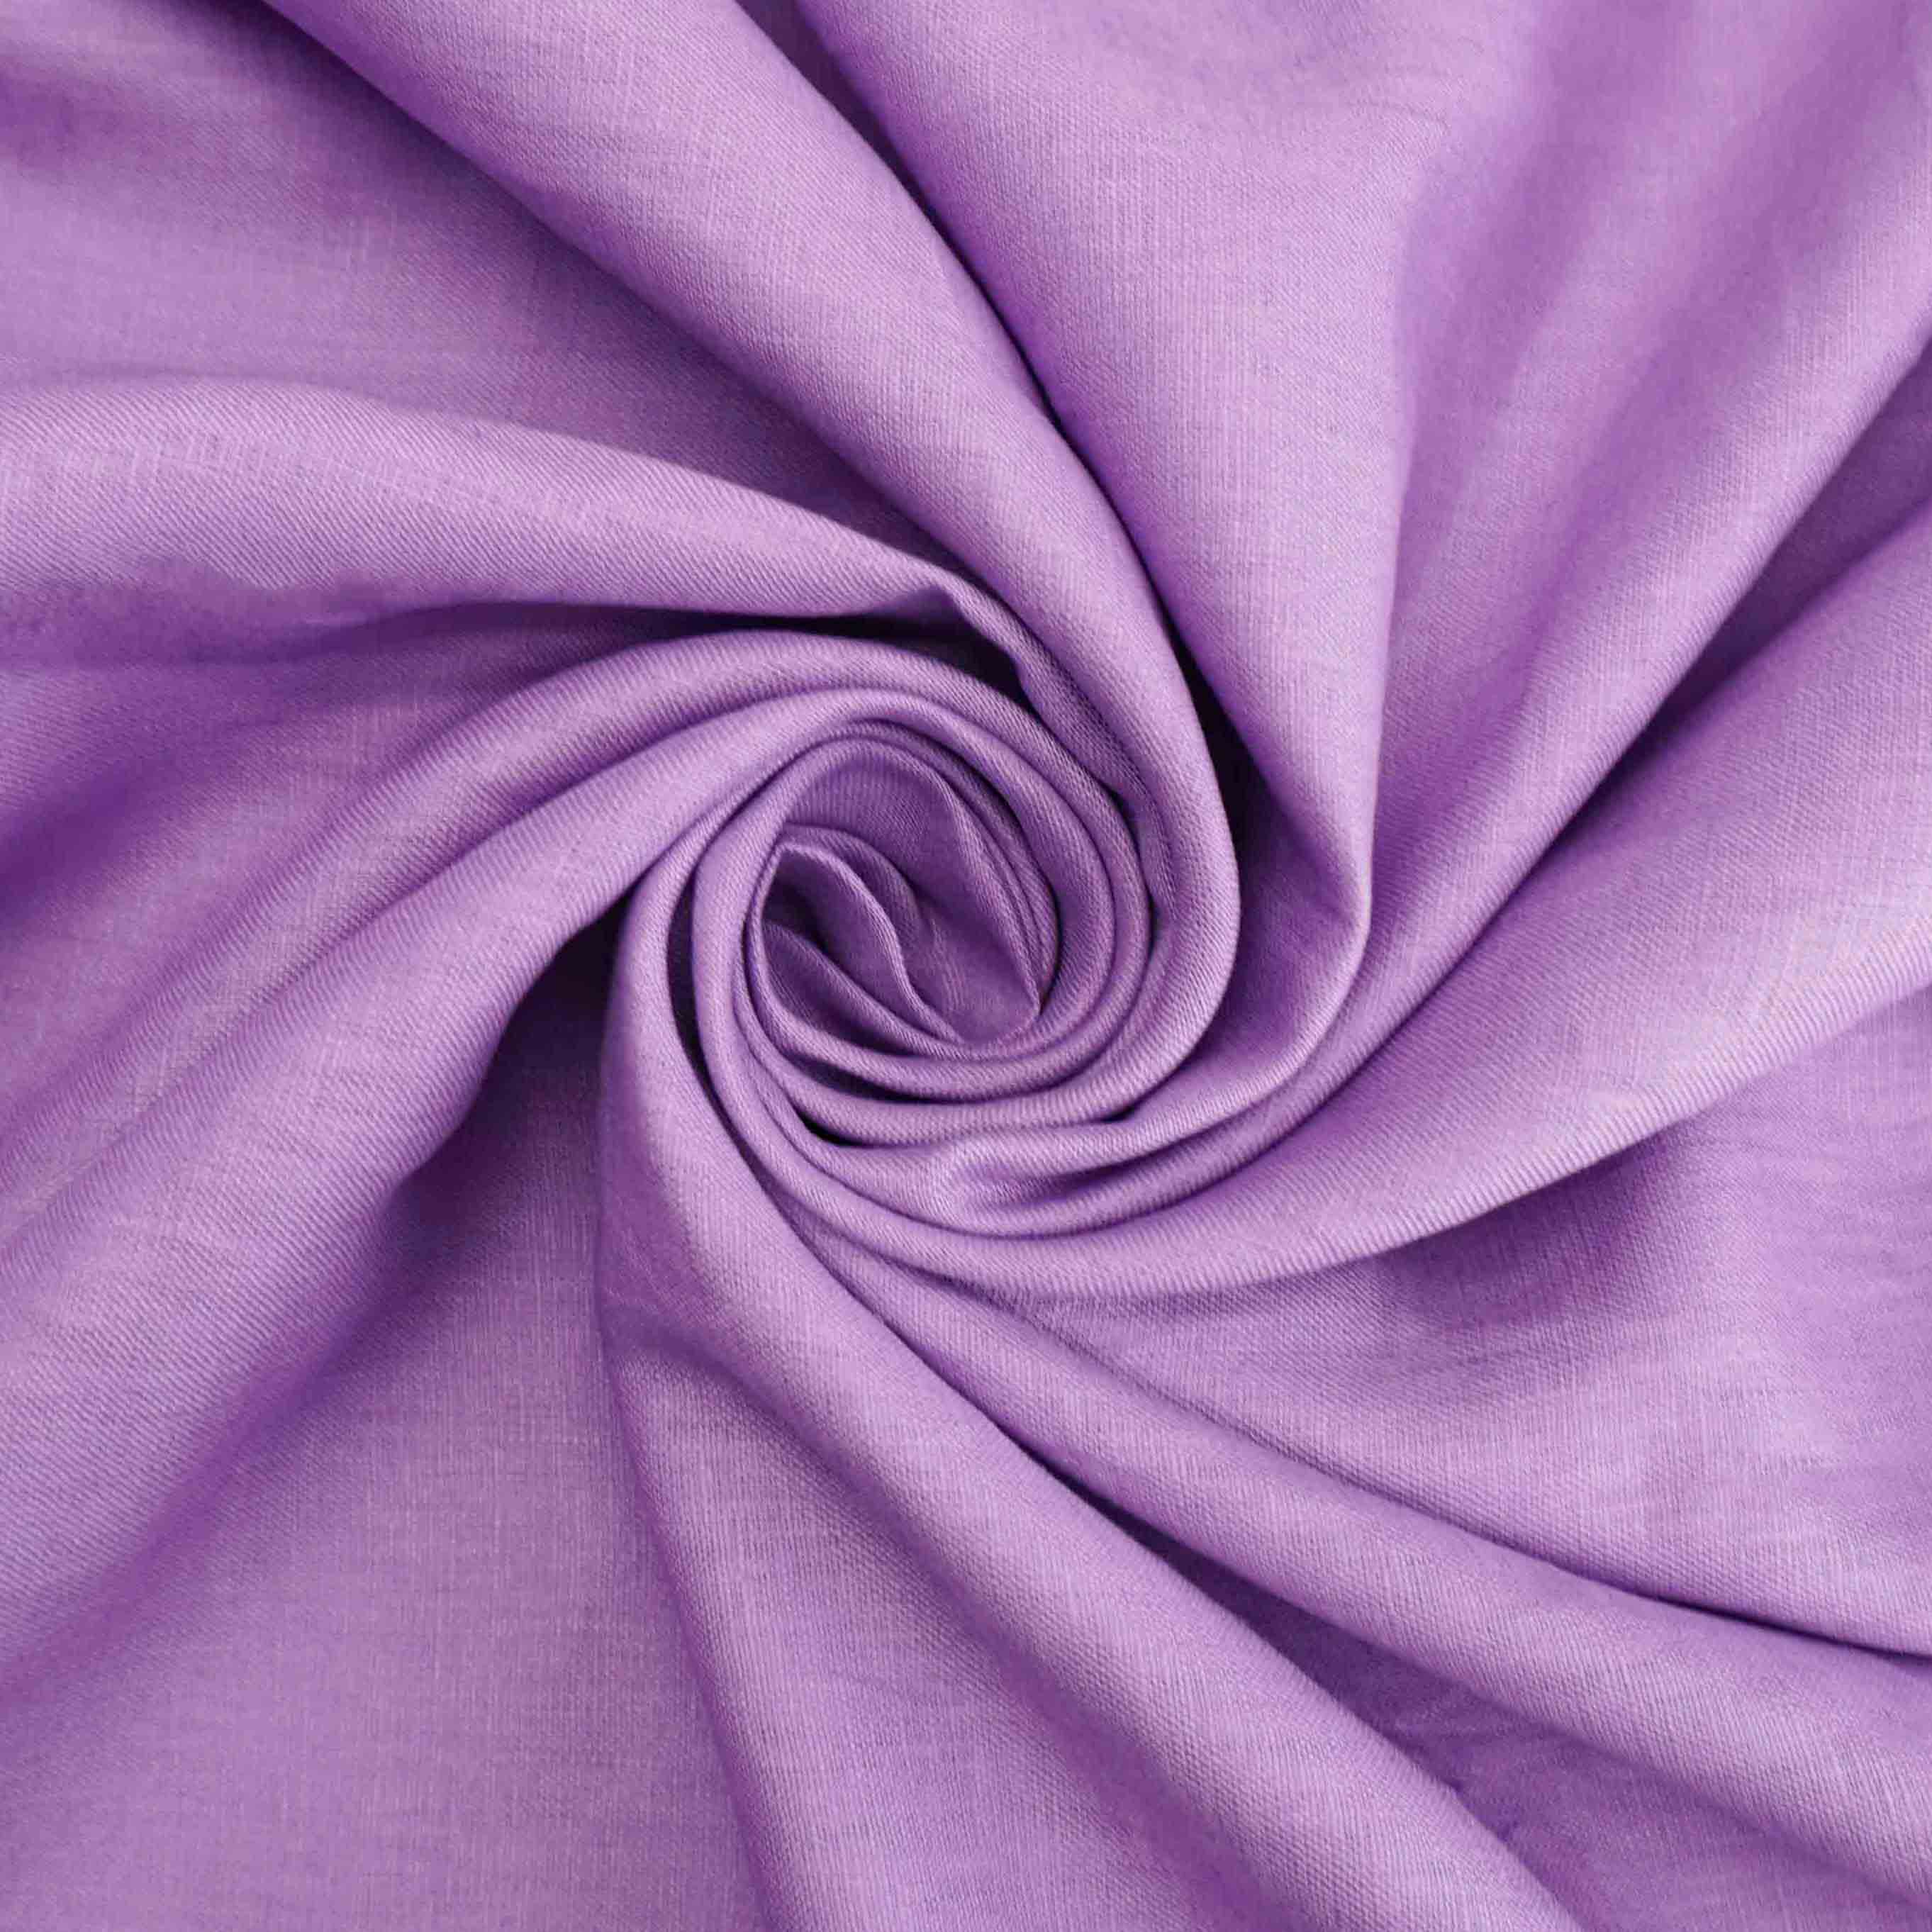 Tecido linho puro lilás